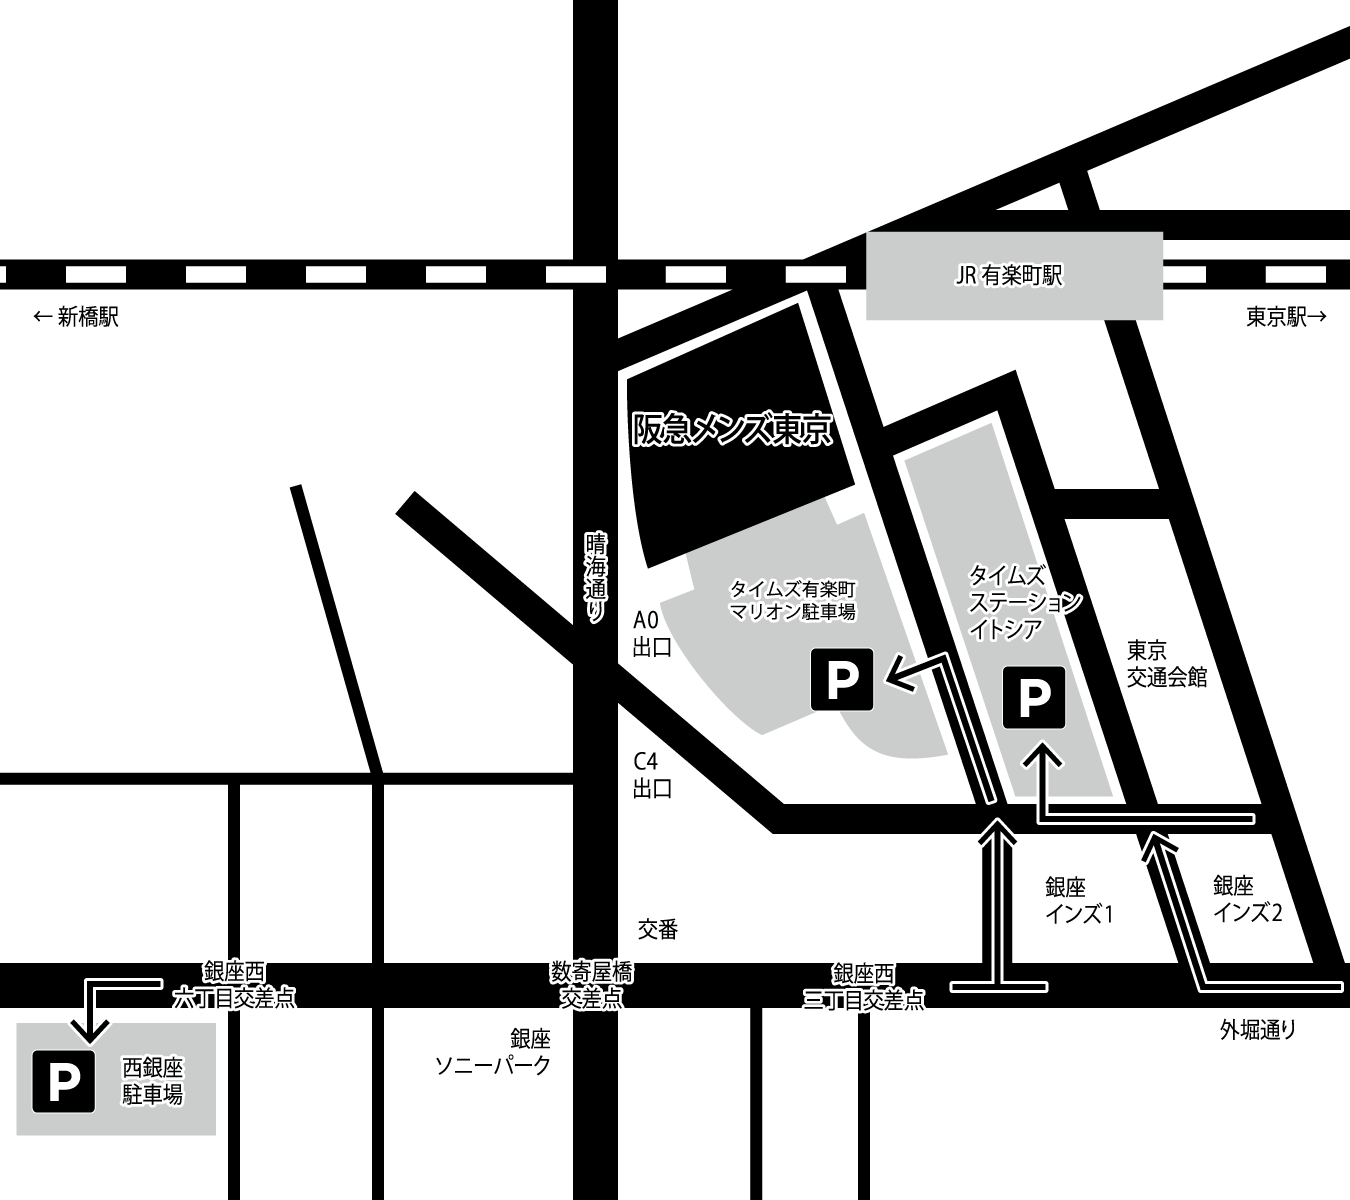 阪急メンズ東京 地図